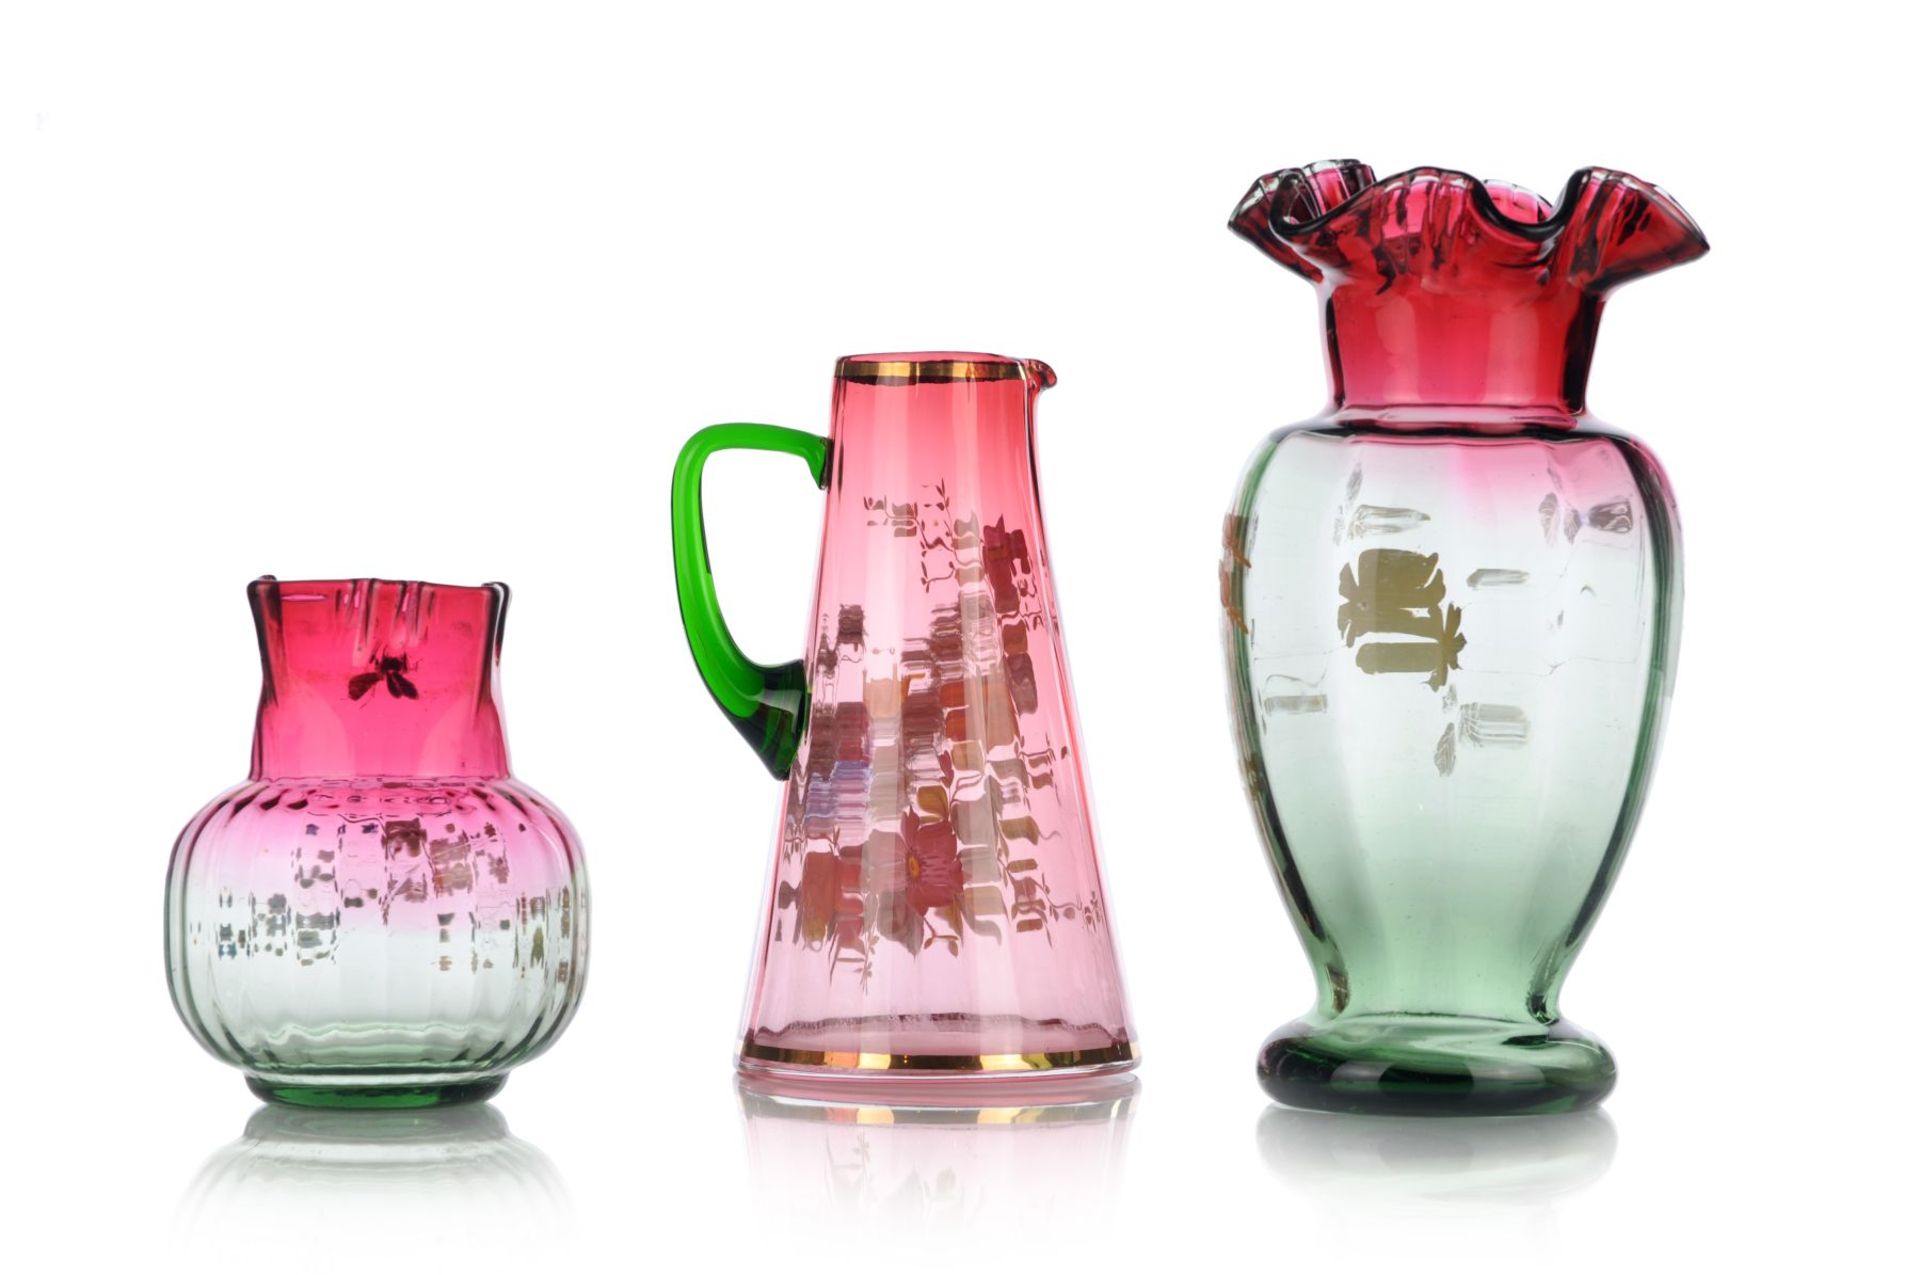 Henkelkrug / Hohe Vase / Kleine Vase. Böhmen. Wohl um 1900. Magentafarben und grün getöntes Glas, - Bild 2 aus 2